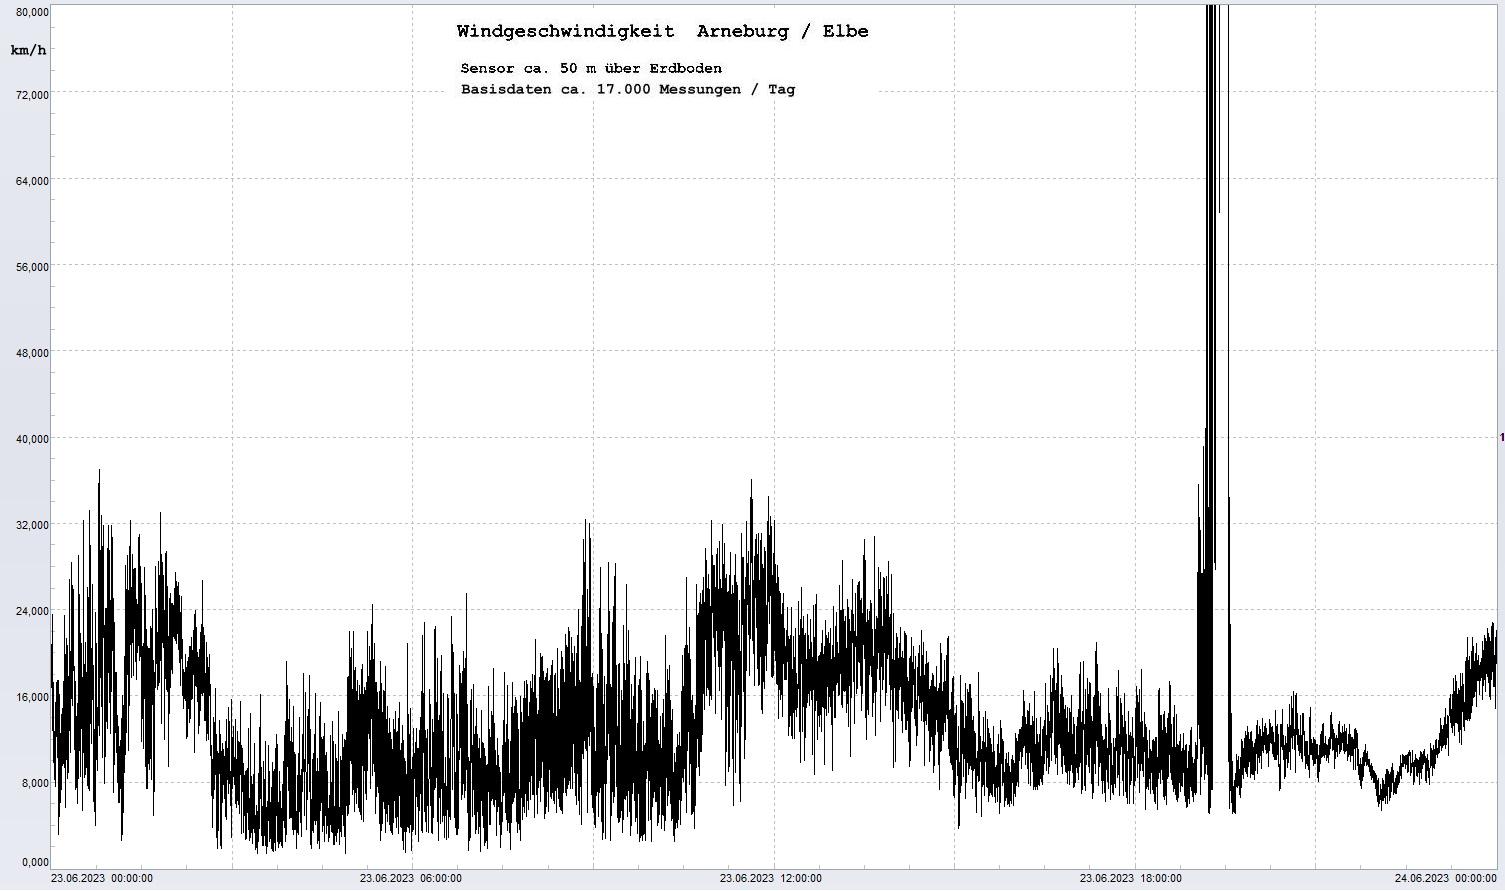 Arneburg Tages-Diagramm Winddaten, 23.06.2023
  Diagramm, Sensor auf Gebäude, ca. 50 m über Erdboden, Basis: 5s-Aufzeichnung